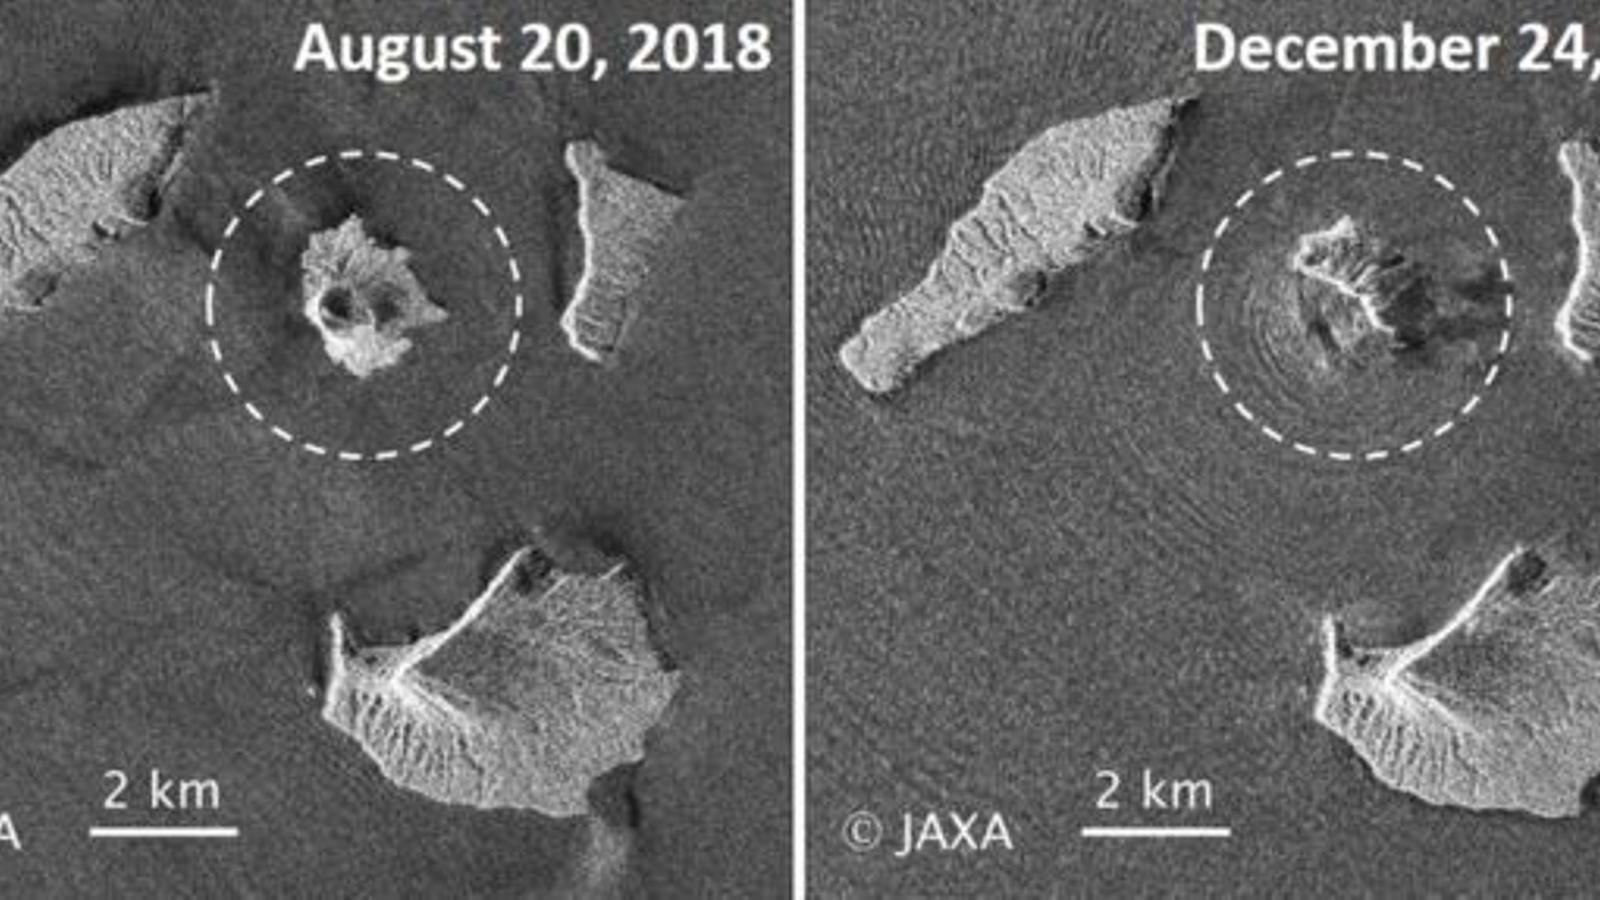 Imatges del volcà Anak Krakatoa en què s'aprecia la pèrdua de volum després del tsunami / JAXA